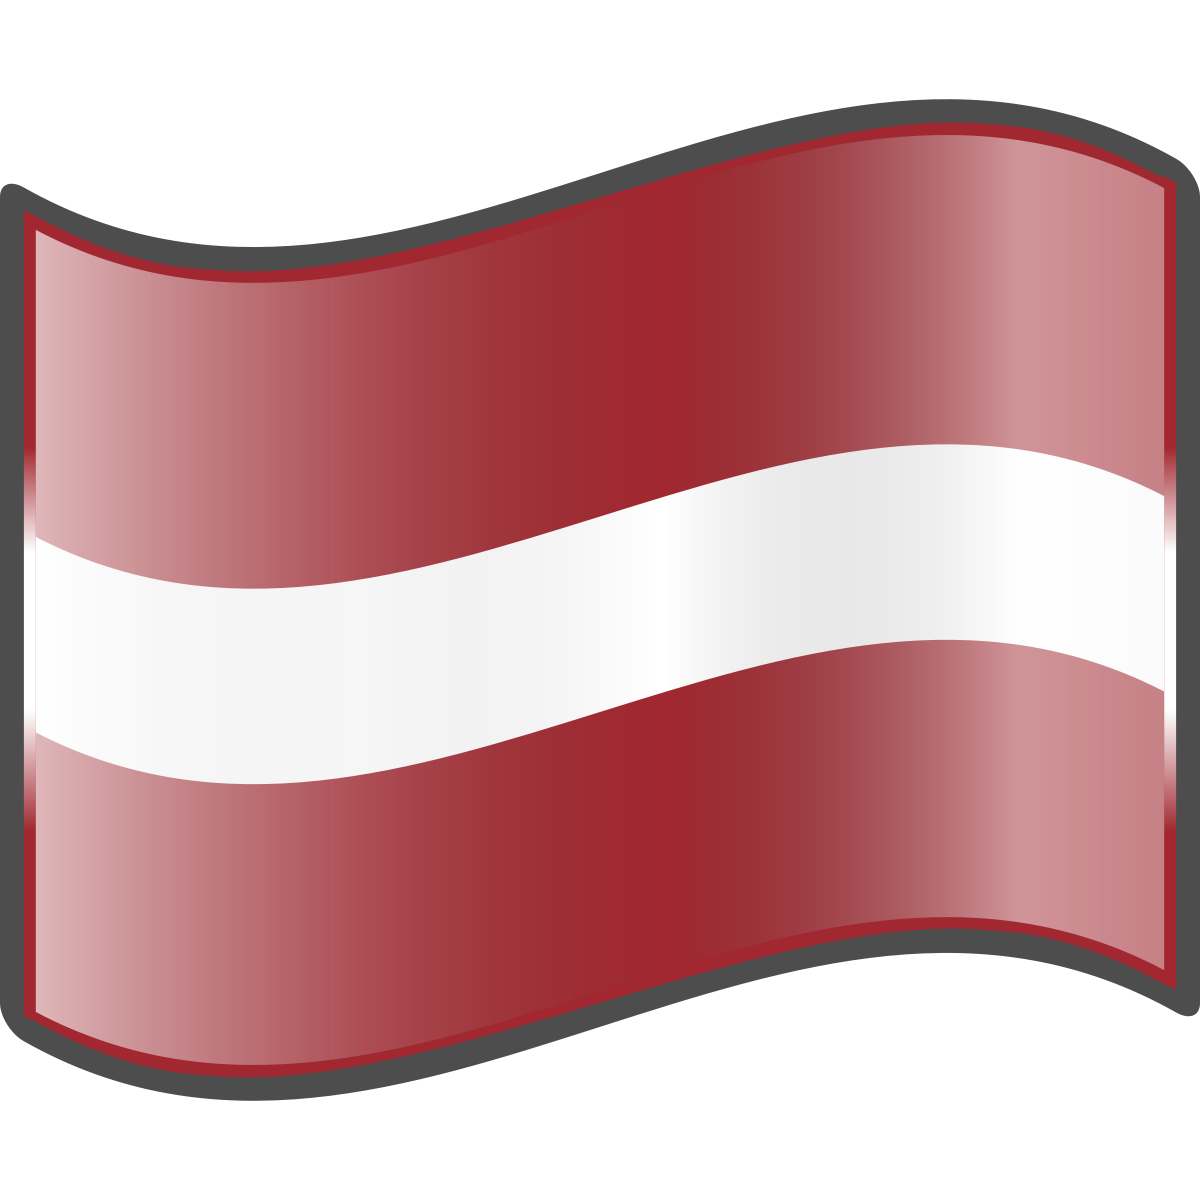 Latvia Flag Background PNG Image